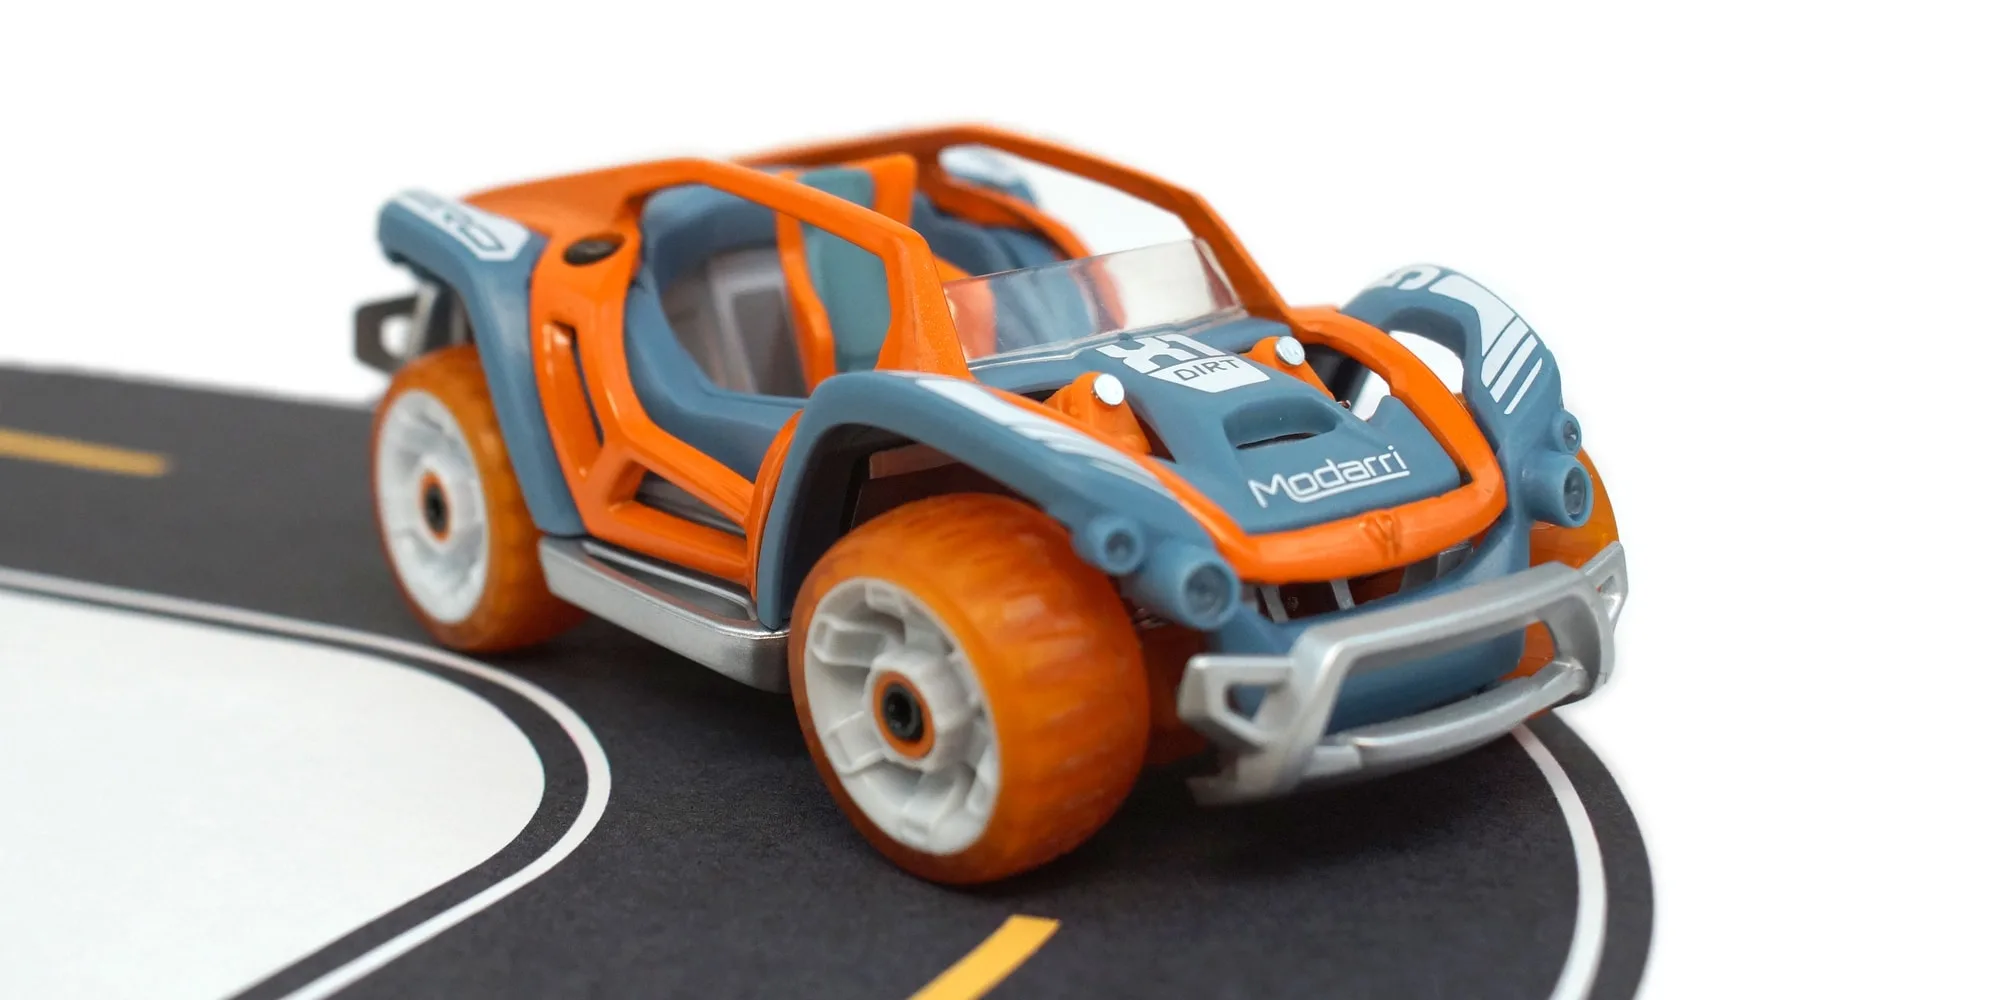 Modarri toy car in orange
